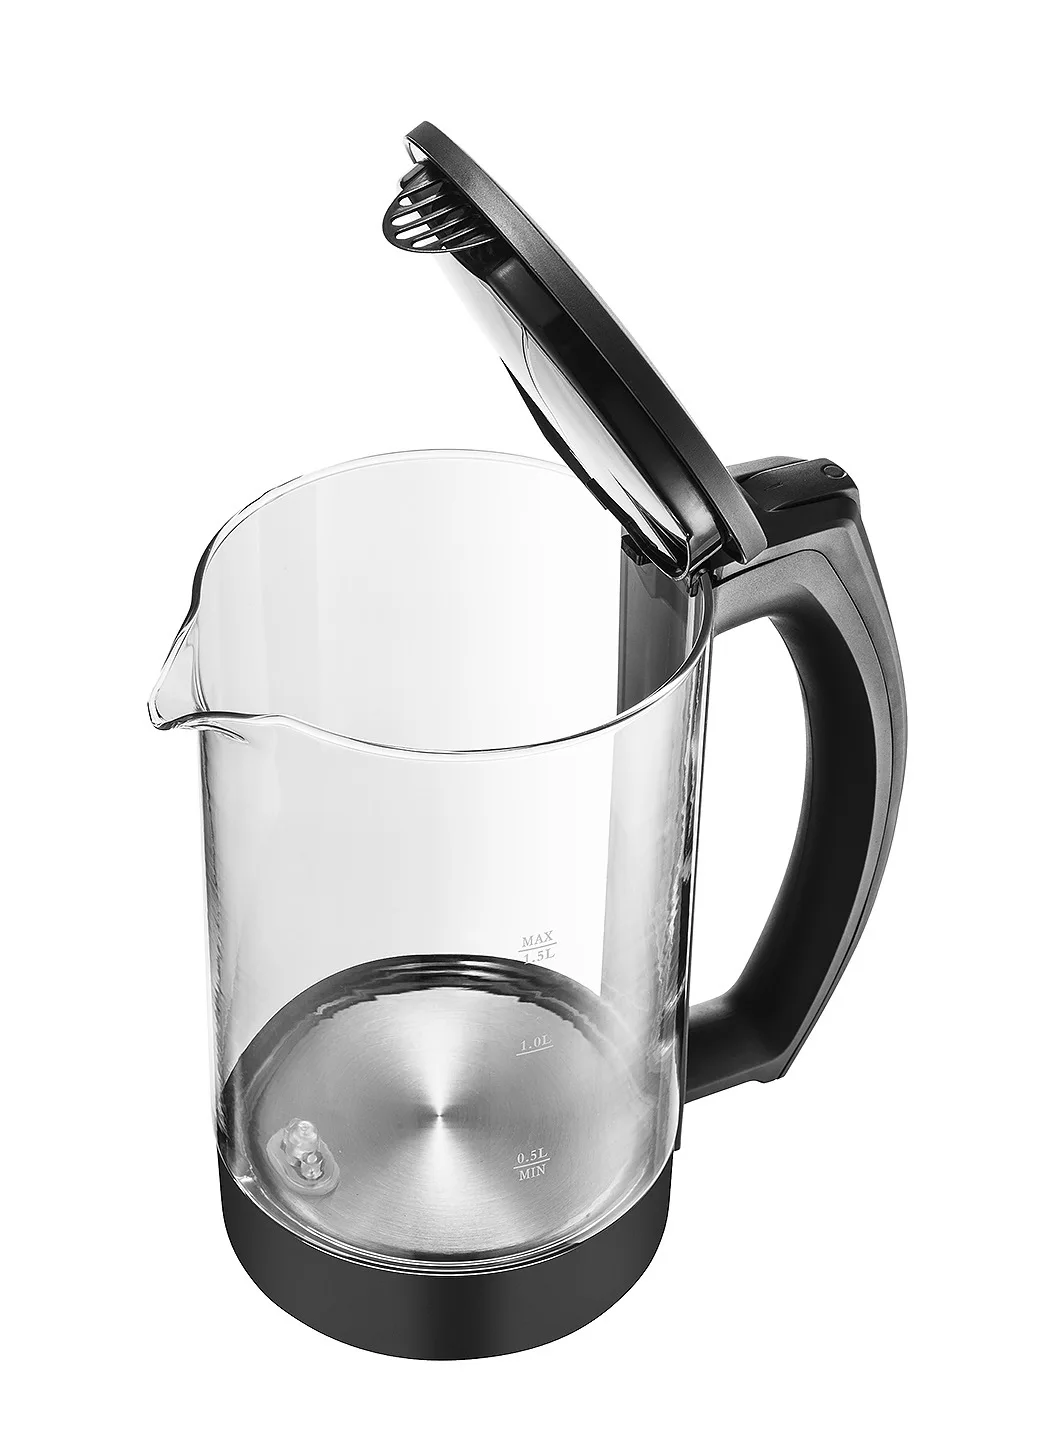 1.5L чайник для воды стеклянный ручной мгновенный нагрев Электрический чайник для воды Автоматическая защита от помех проводной чайник FY-588A